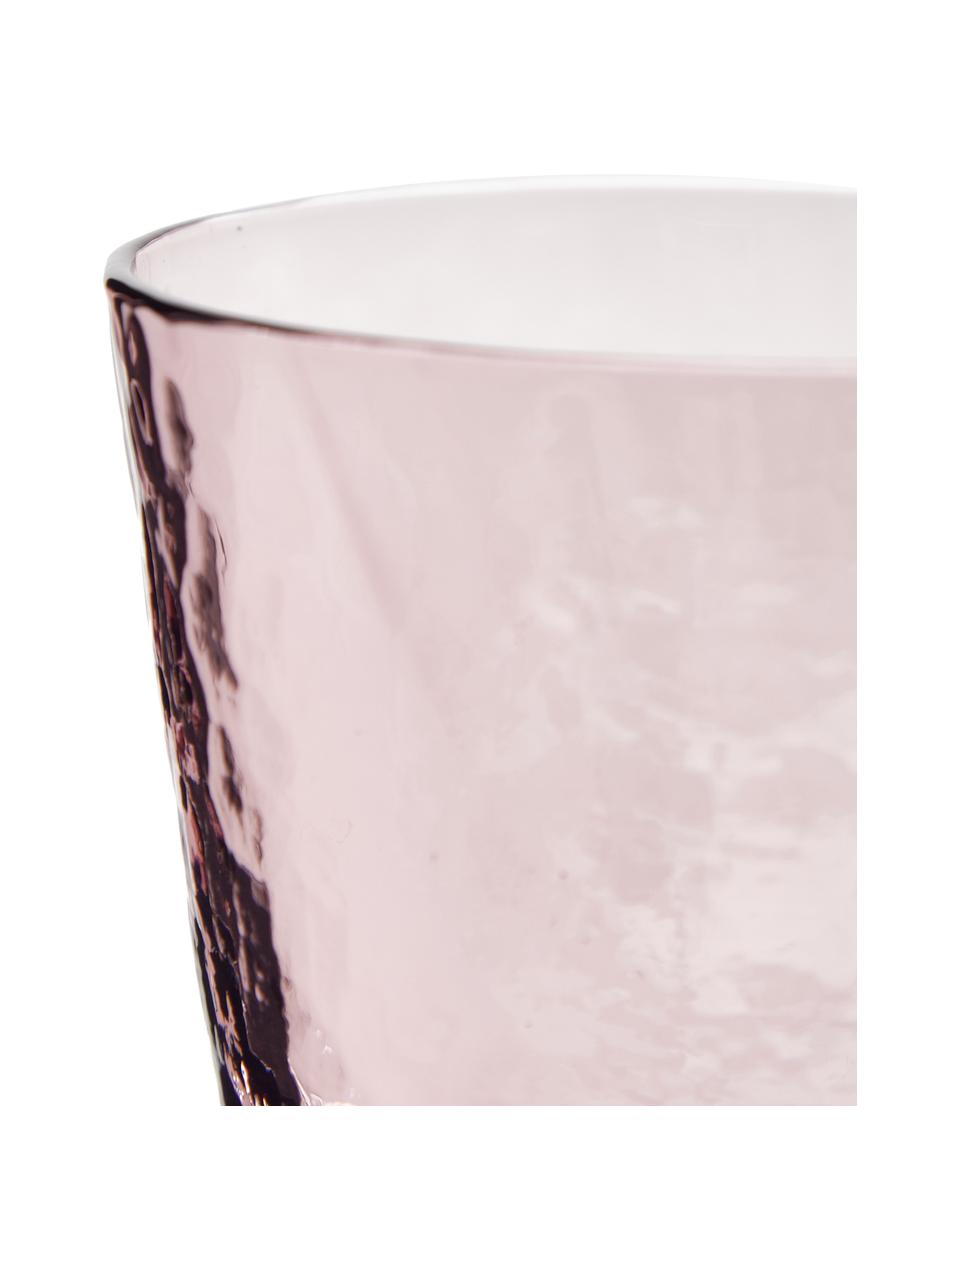 Ručně foukaná sklenice Hammered, 4 ks, Foukané sklo, Fialová, transparentní, Ø 9 cm, V 10 cm, 250 ml